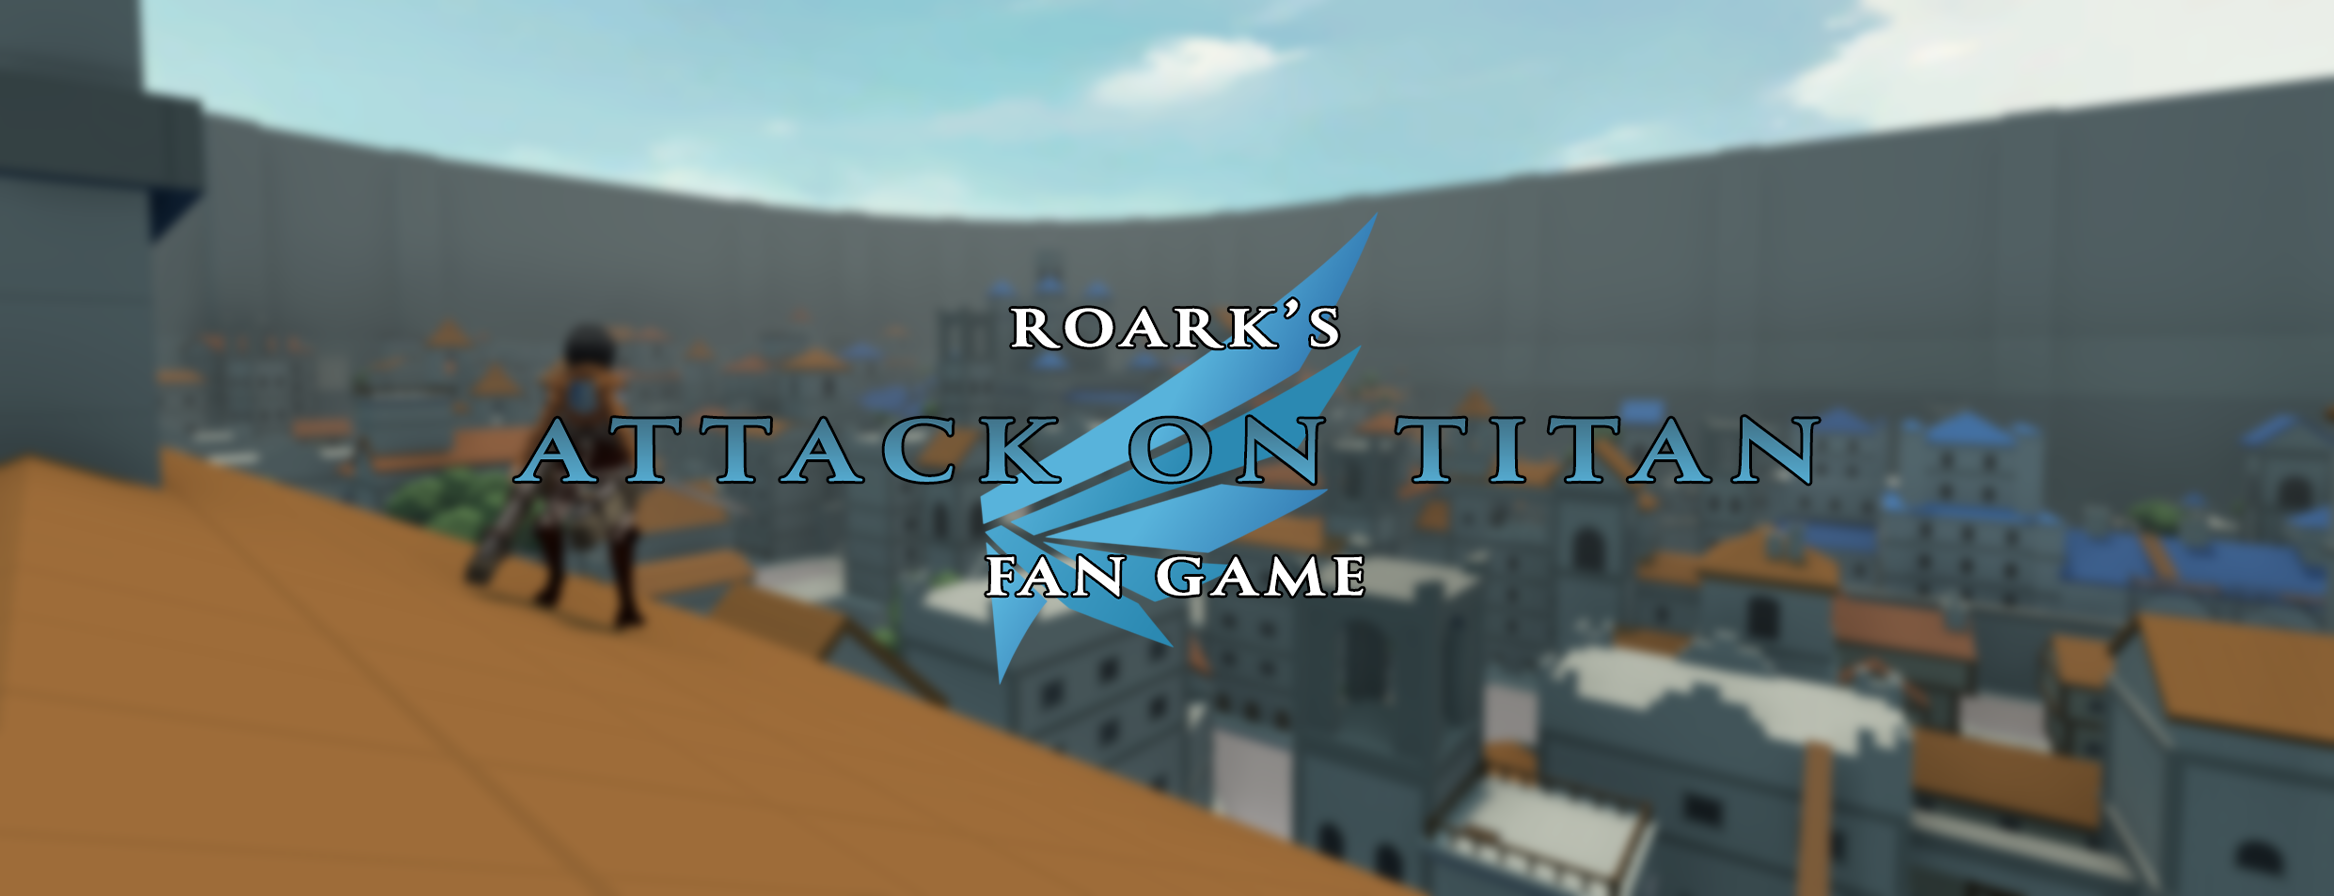 Roark's Attack on Titan Fan Game RE-UPLOAD